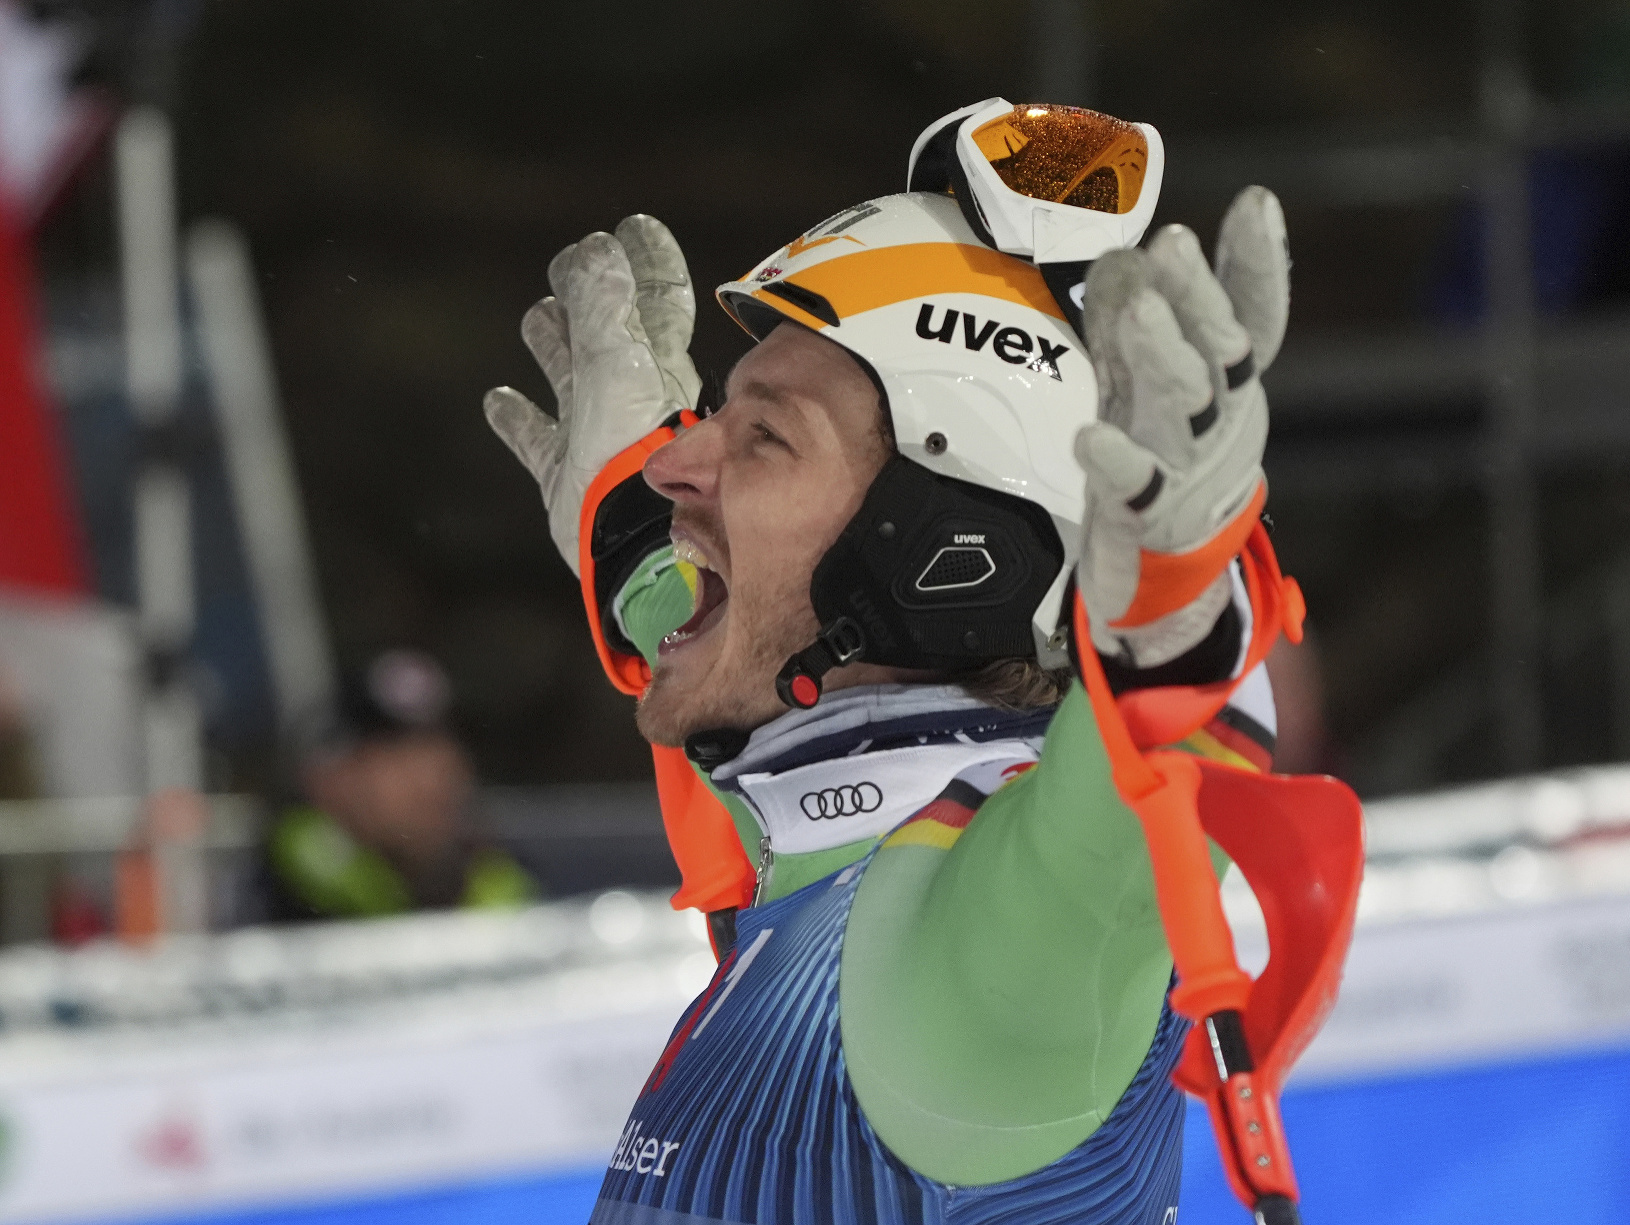 Nemecký lyžiar Linus Strasser